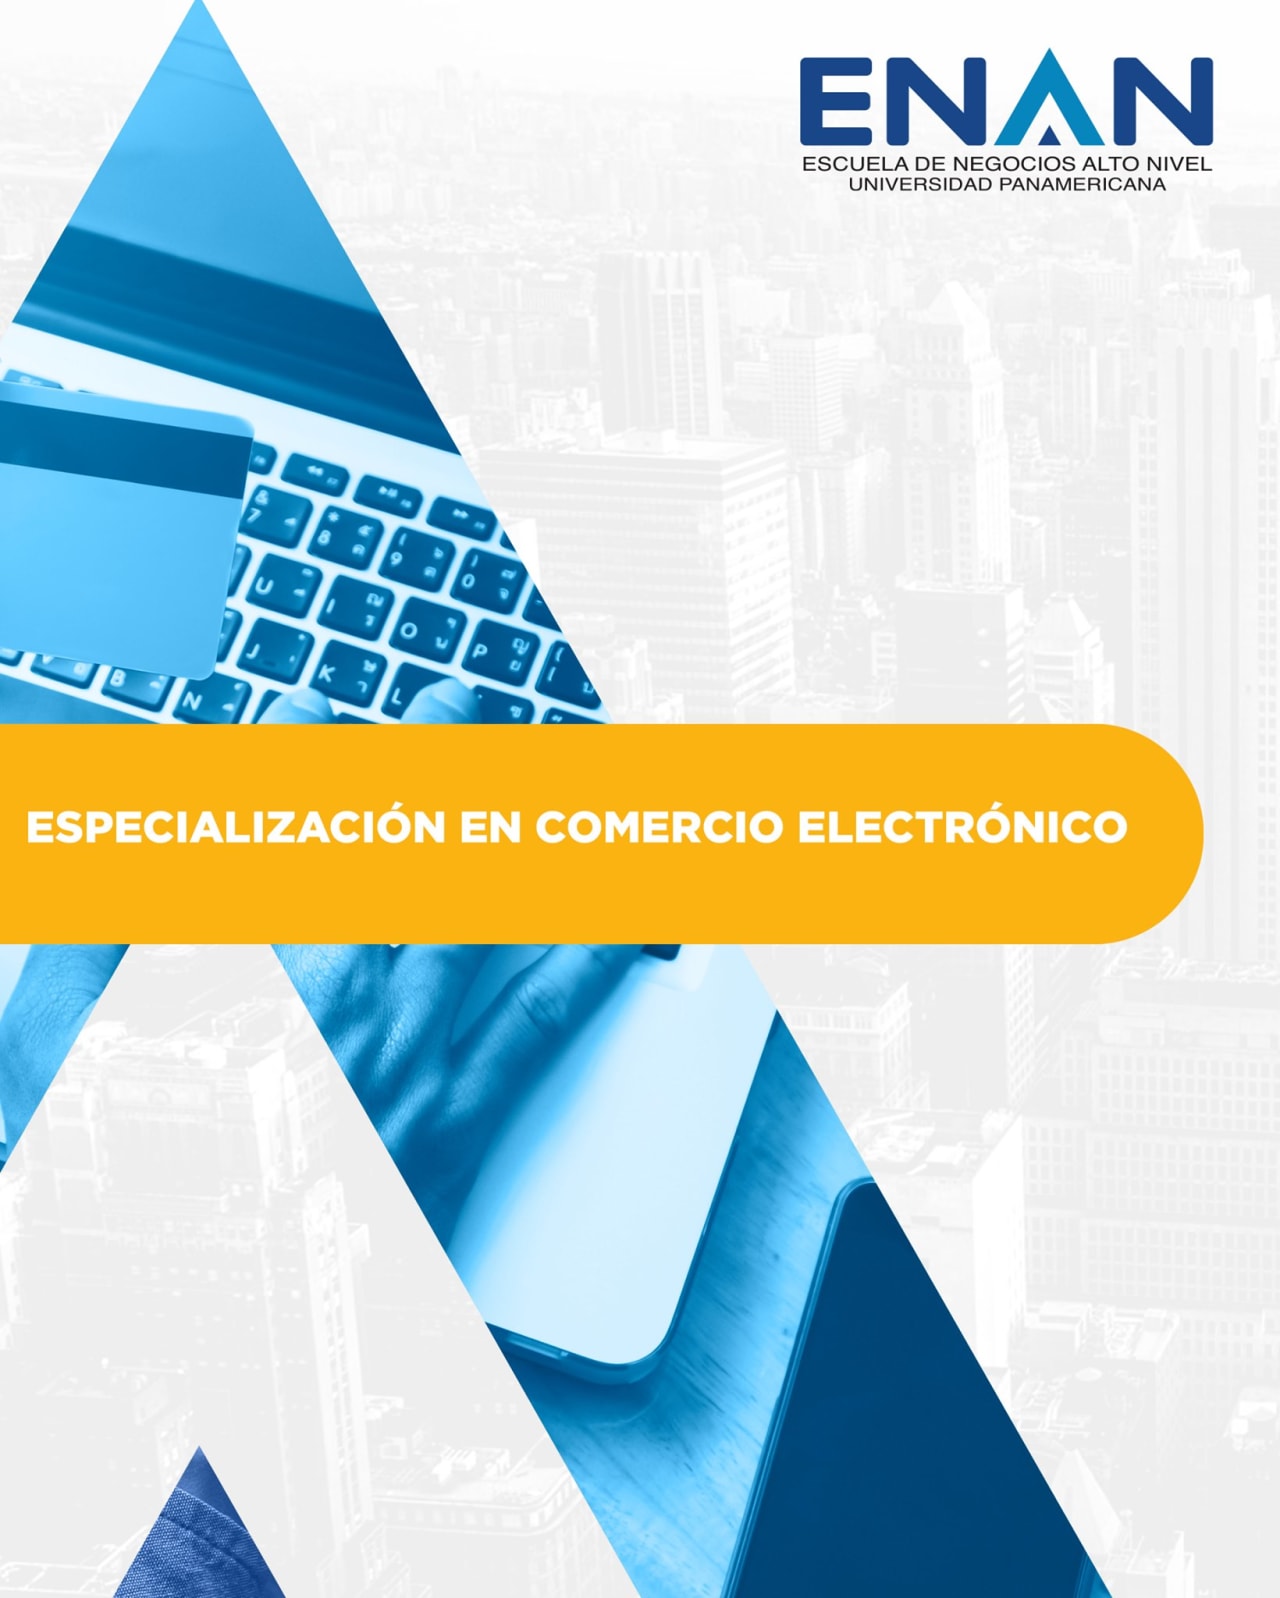 Escuela de Negocios Alto Nivel - Universidad Panamericana de Guatemala Специализация на електронната търговия